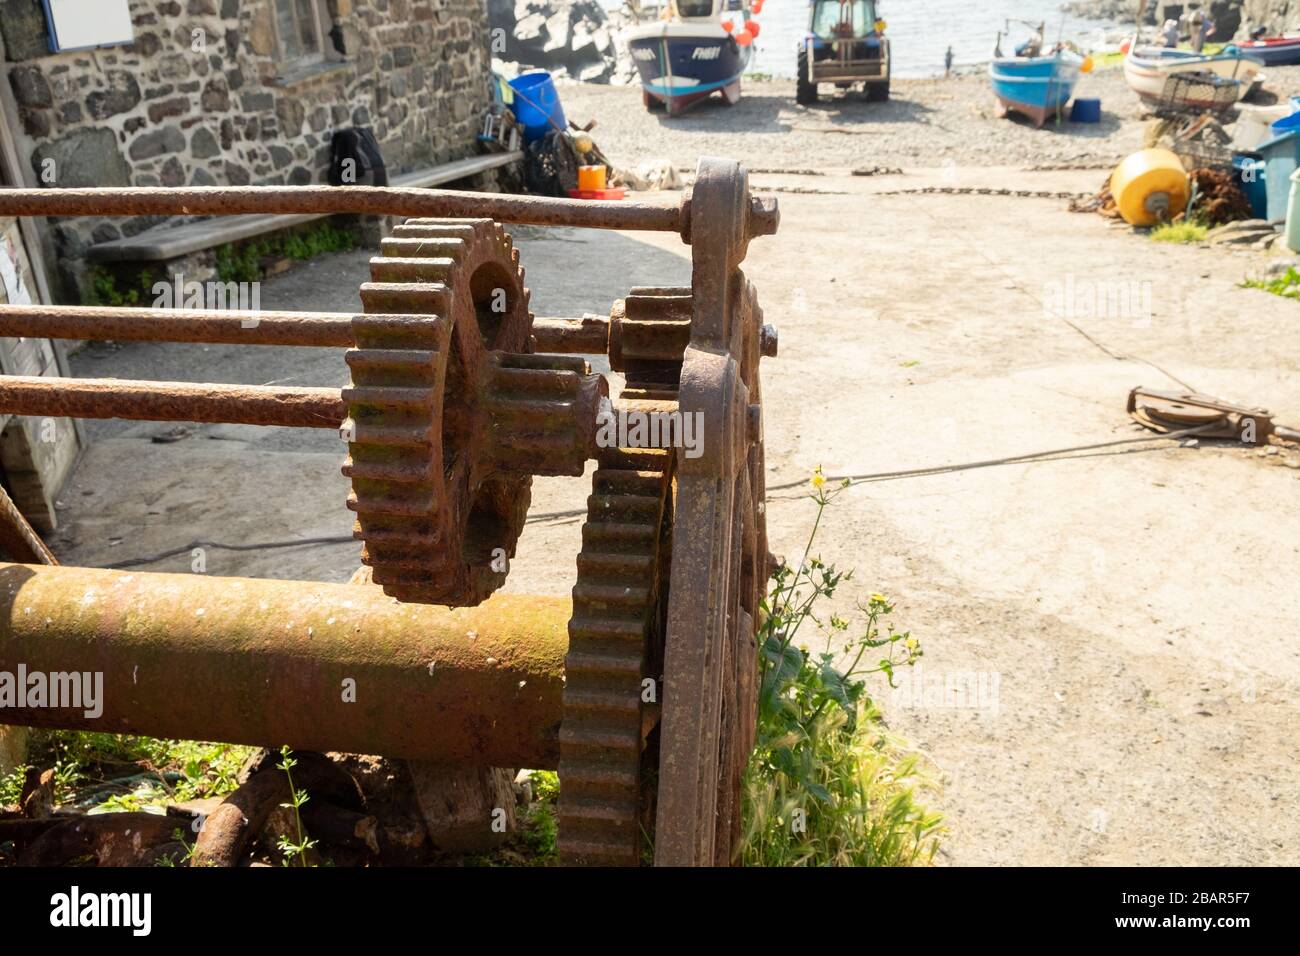 Vieux treuil déutilisé rouillé avec engrenage à crémaillère denté et câble utilisés pour treuil de pêche bateaux sur la plage dans le village de Cadgwith, Cornwall, Angleterre Banque D'Images